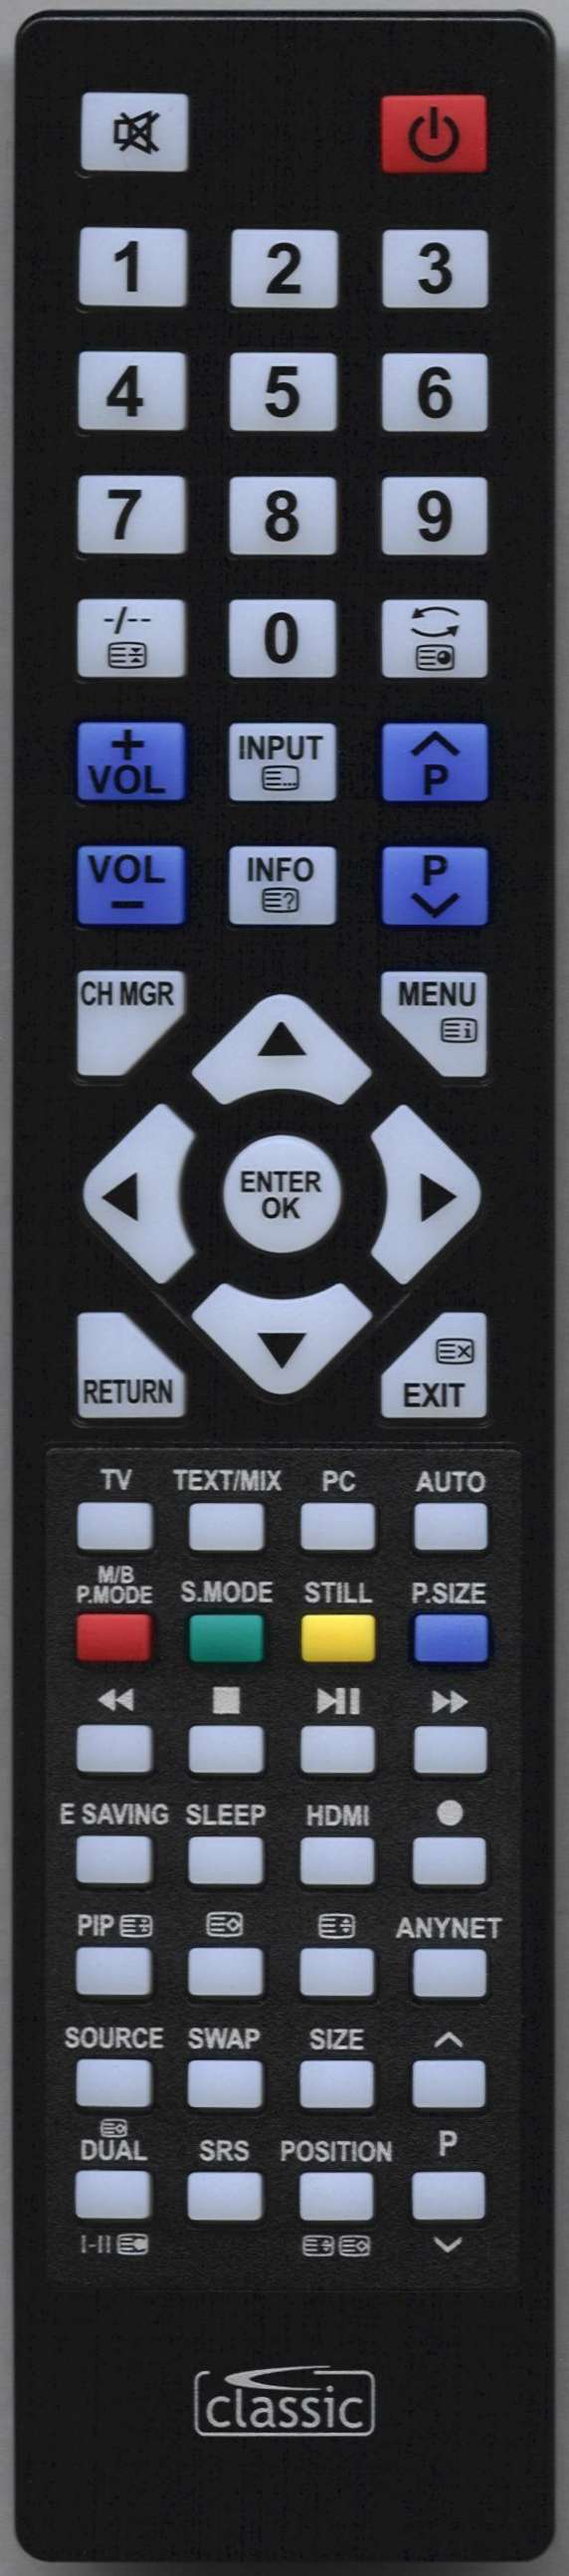 SAMSUNG PS50C91HX/AST Remote Control